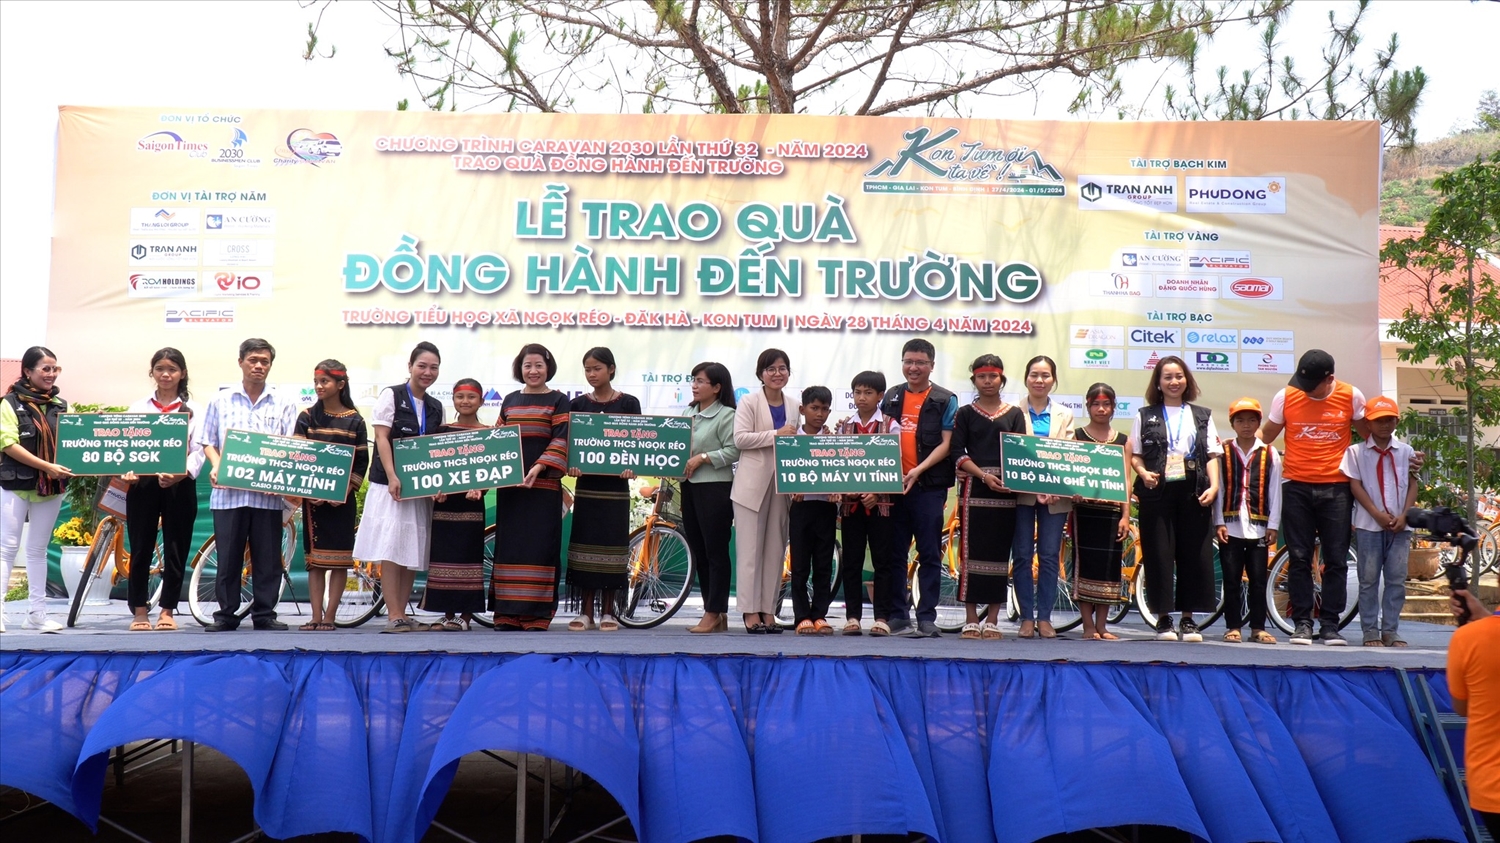 Lãnh đạo Huyện ủy Đăk Hà, Sở GD&ĐT tỉnh và Câu lạc bộ Doanh nhân 2030 tặng quà cho các em học sinh DTTS xã Ngọk Réo, huyện Đăk Hà